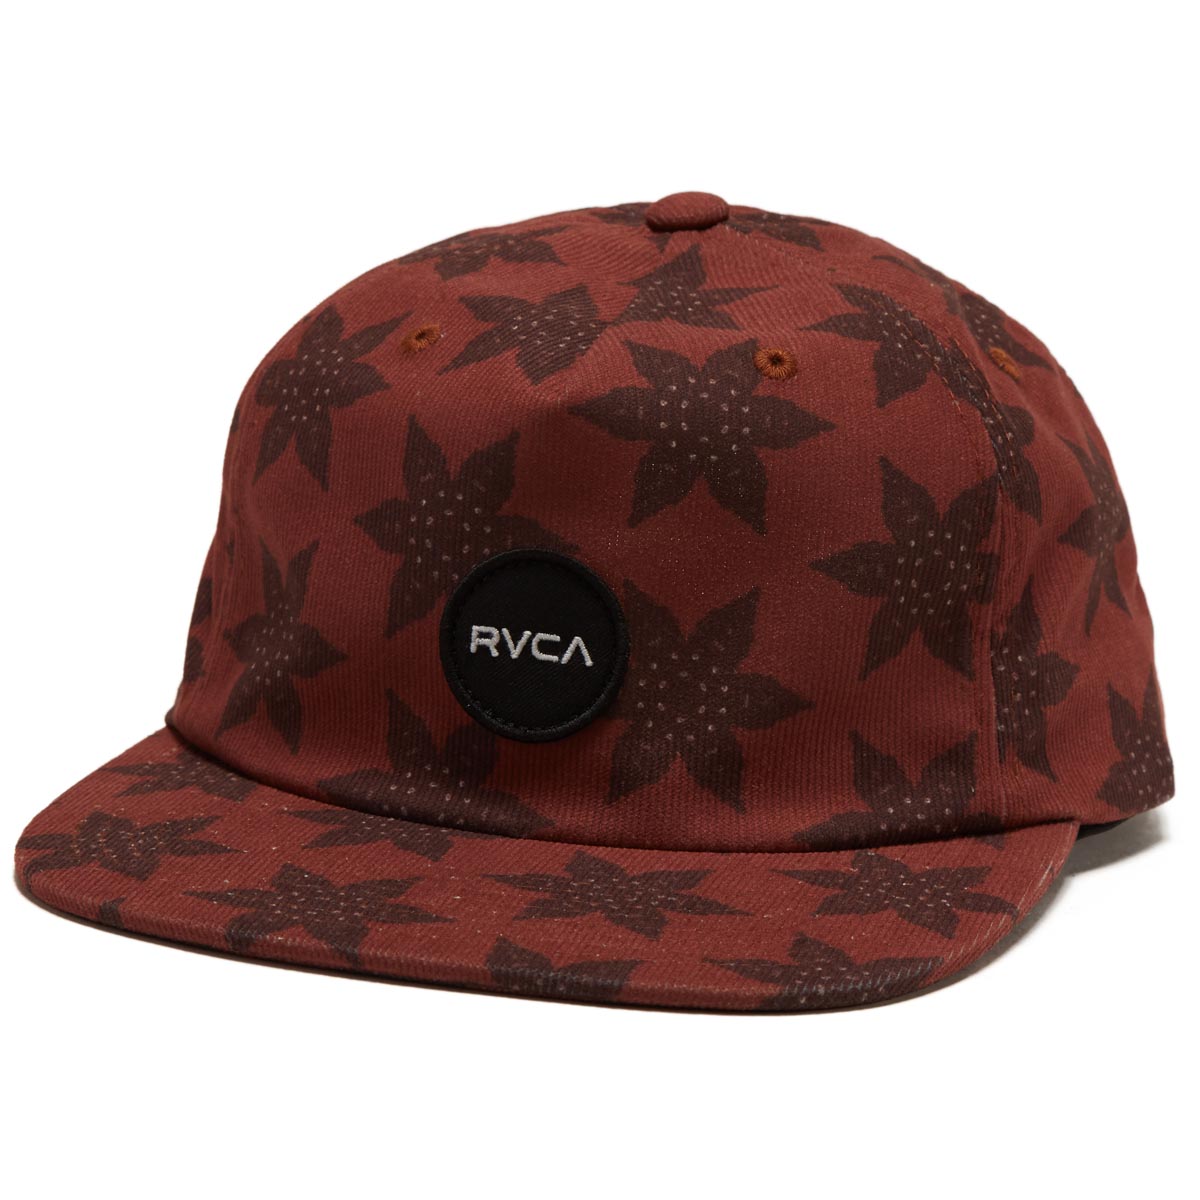 RVCA Escape Snapback Hat - Rawhide image 1